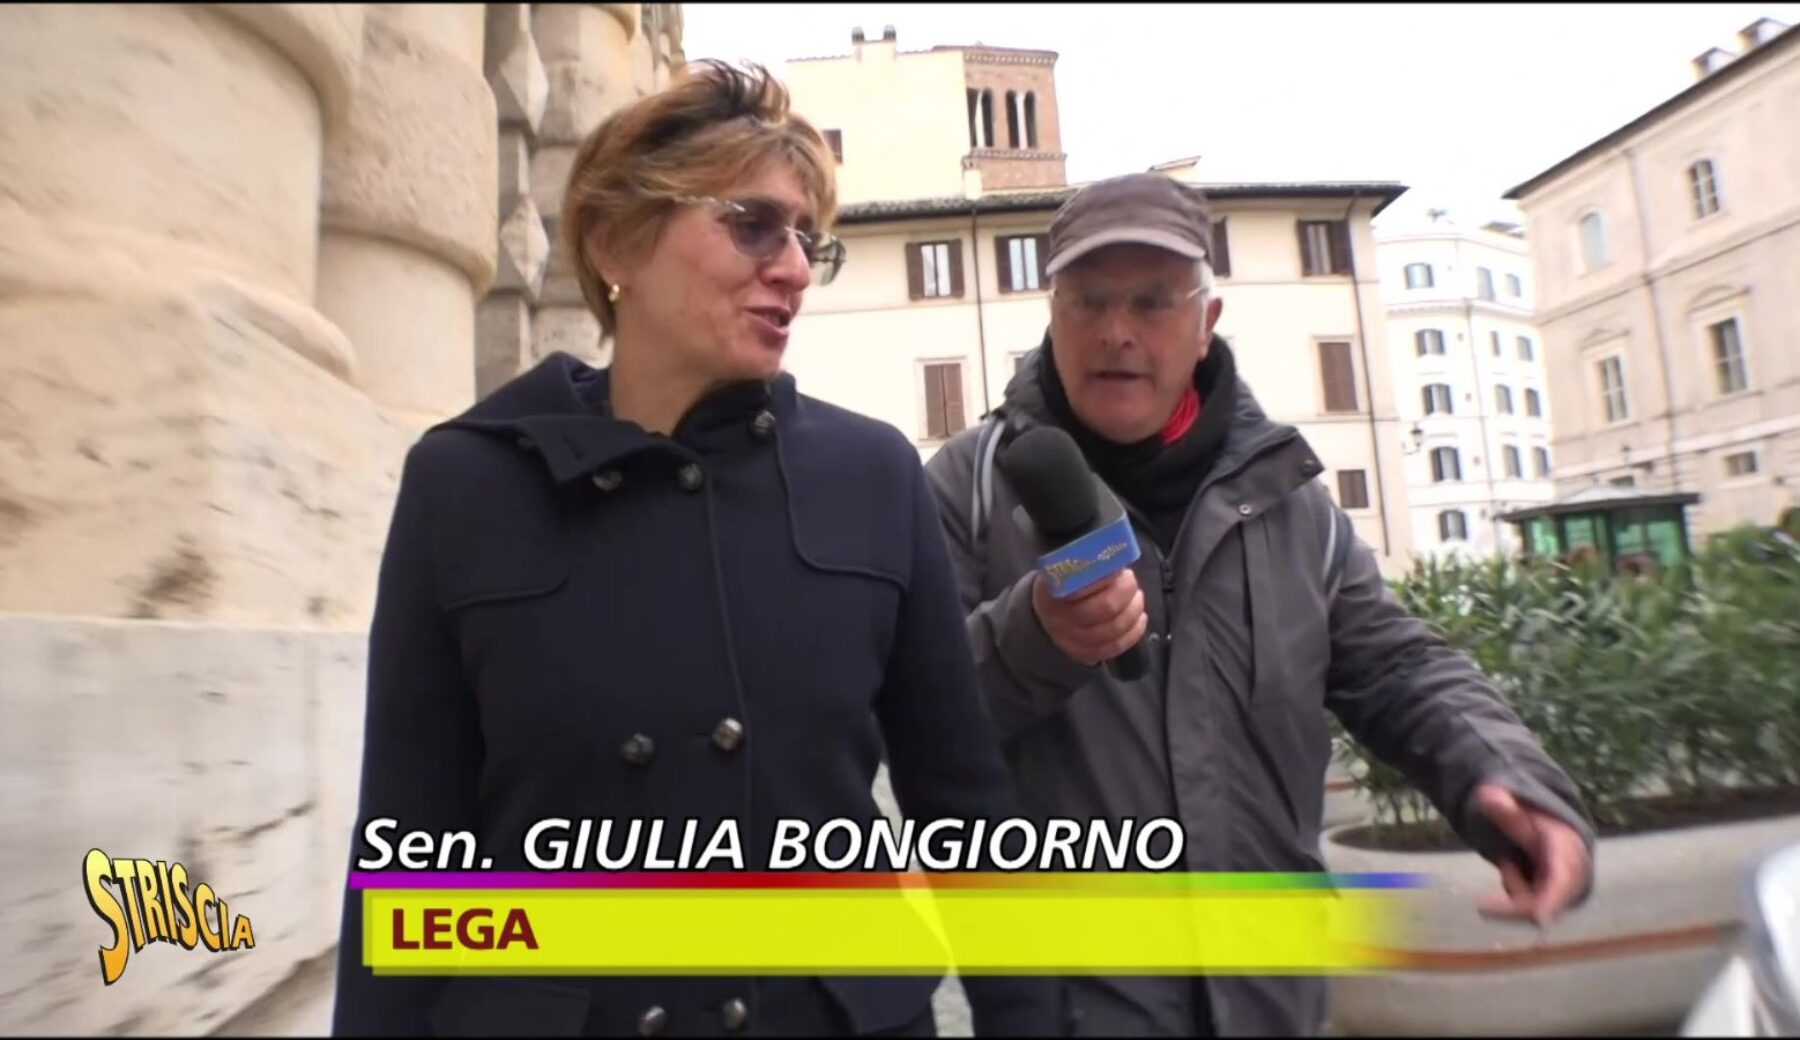 Giulia Bongiorno canta con Enrico Lucci “Bella ciao”